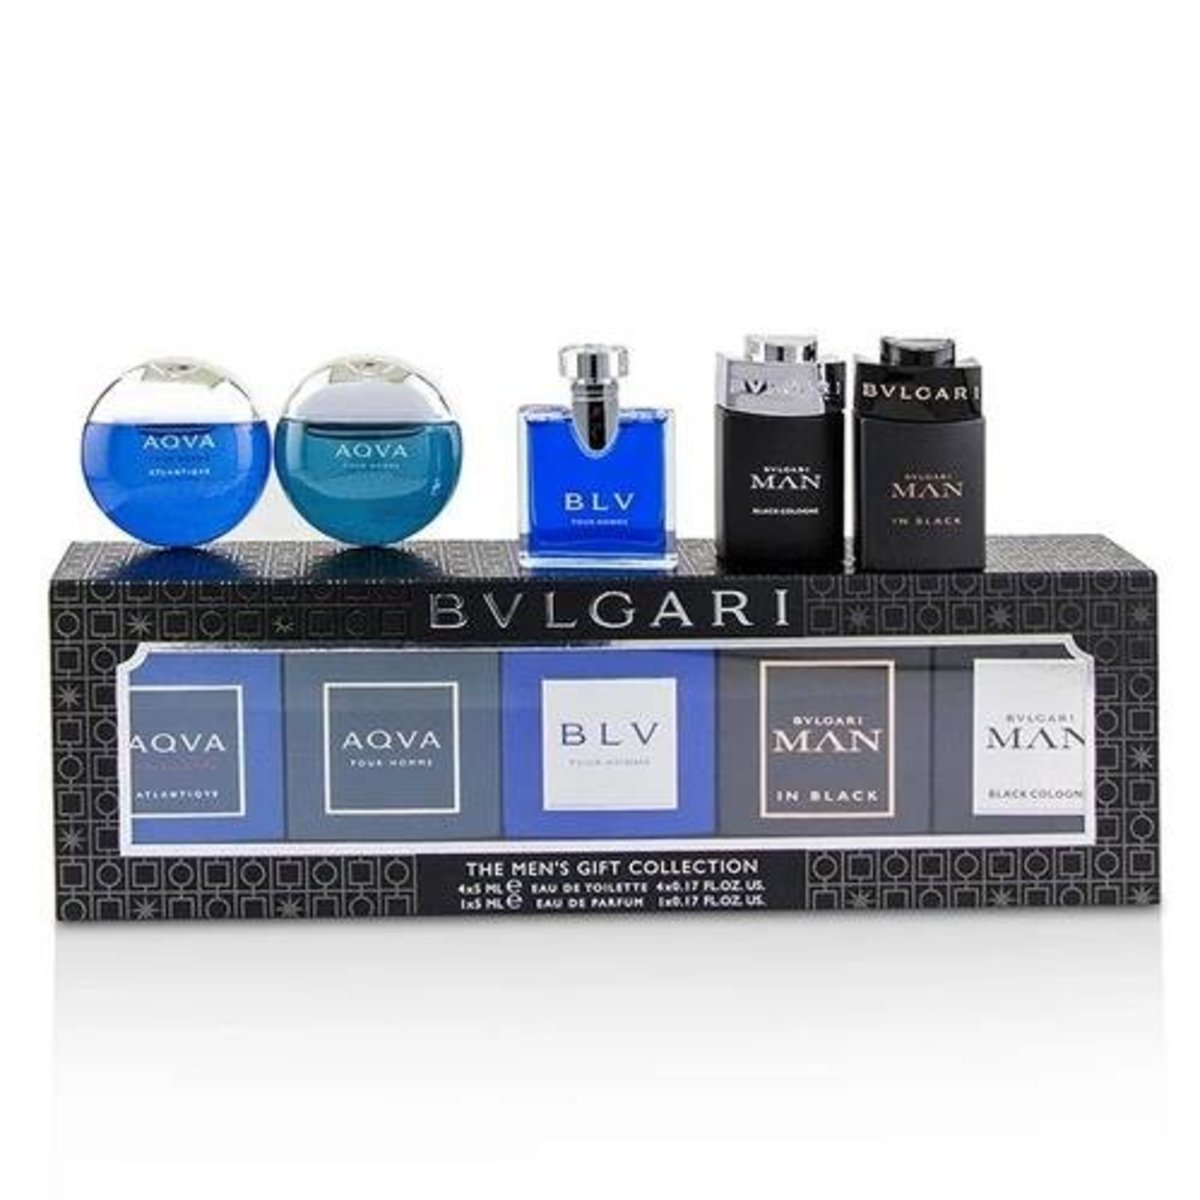 bvlgari gift collection